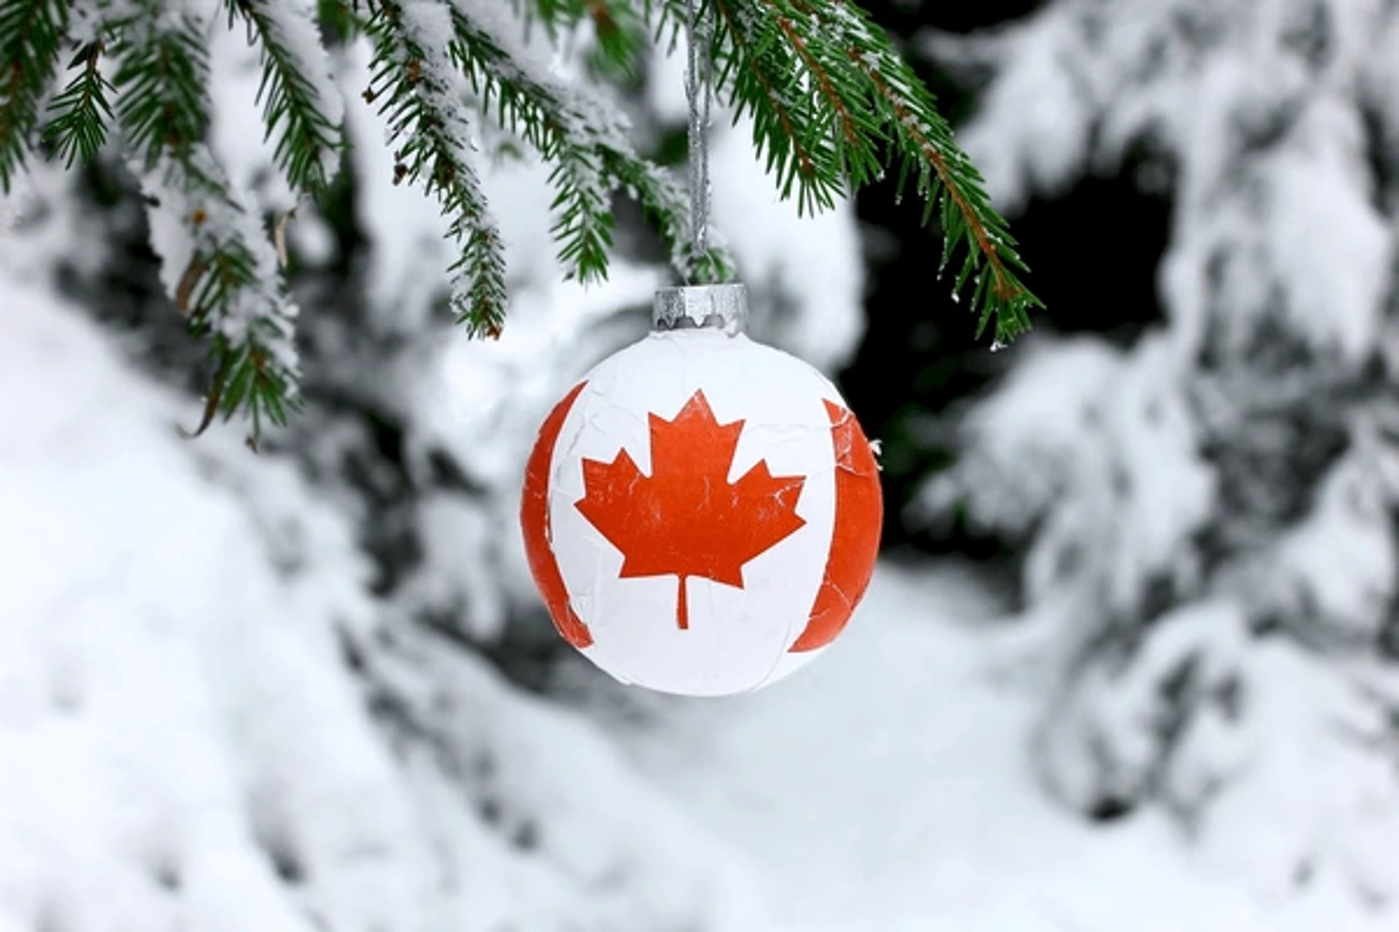 کانادایی ها کریسمس را چگونه جشن می گیرند؟